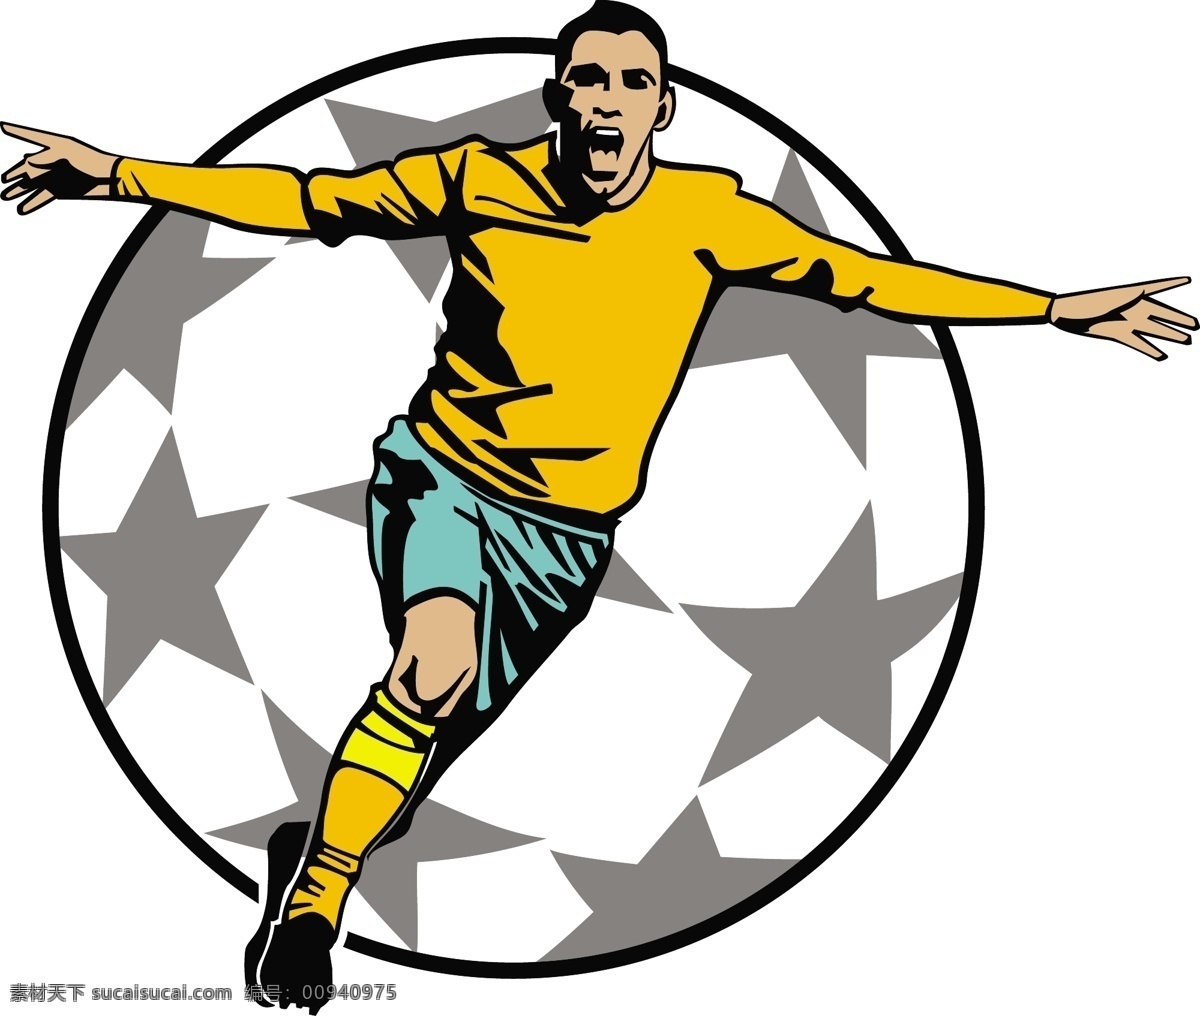 足球图片 跑步 人 星星 足球 足球矢量素材 足球模板下载 矢量 矢量图 日常生活